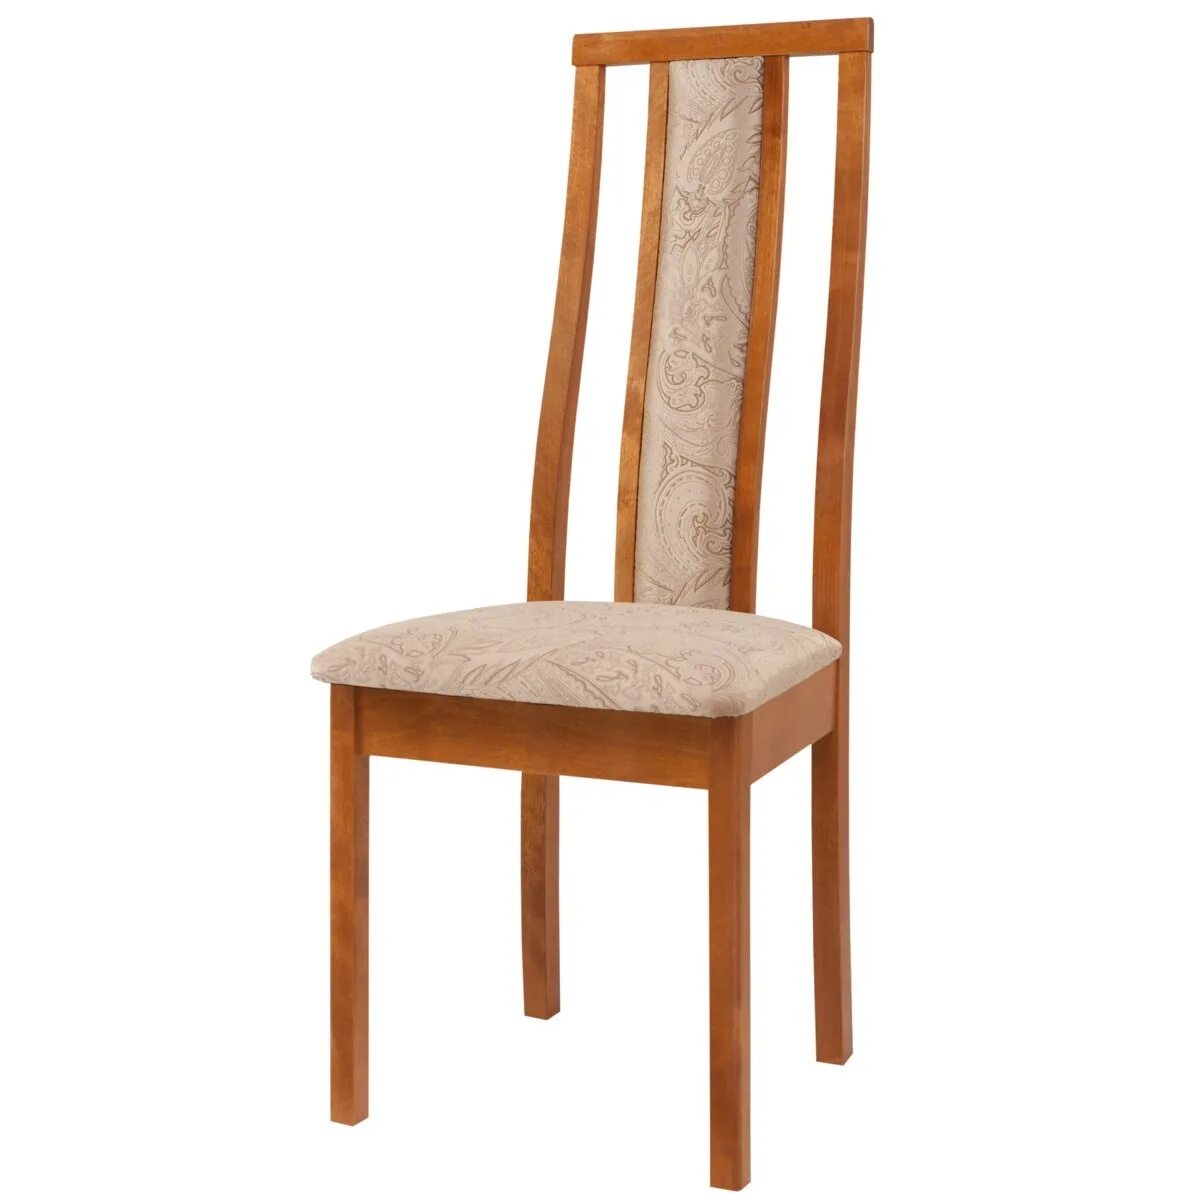 Чепецкая мебельная фабрика стул деревянный с40a. Стул деревянный со спинкой. Стулья деревянные с мягким сиденьем. Деревянный стул с высокой спинкой. Купить стул каталог